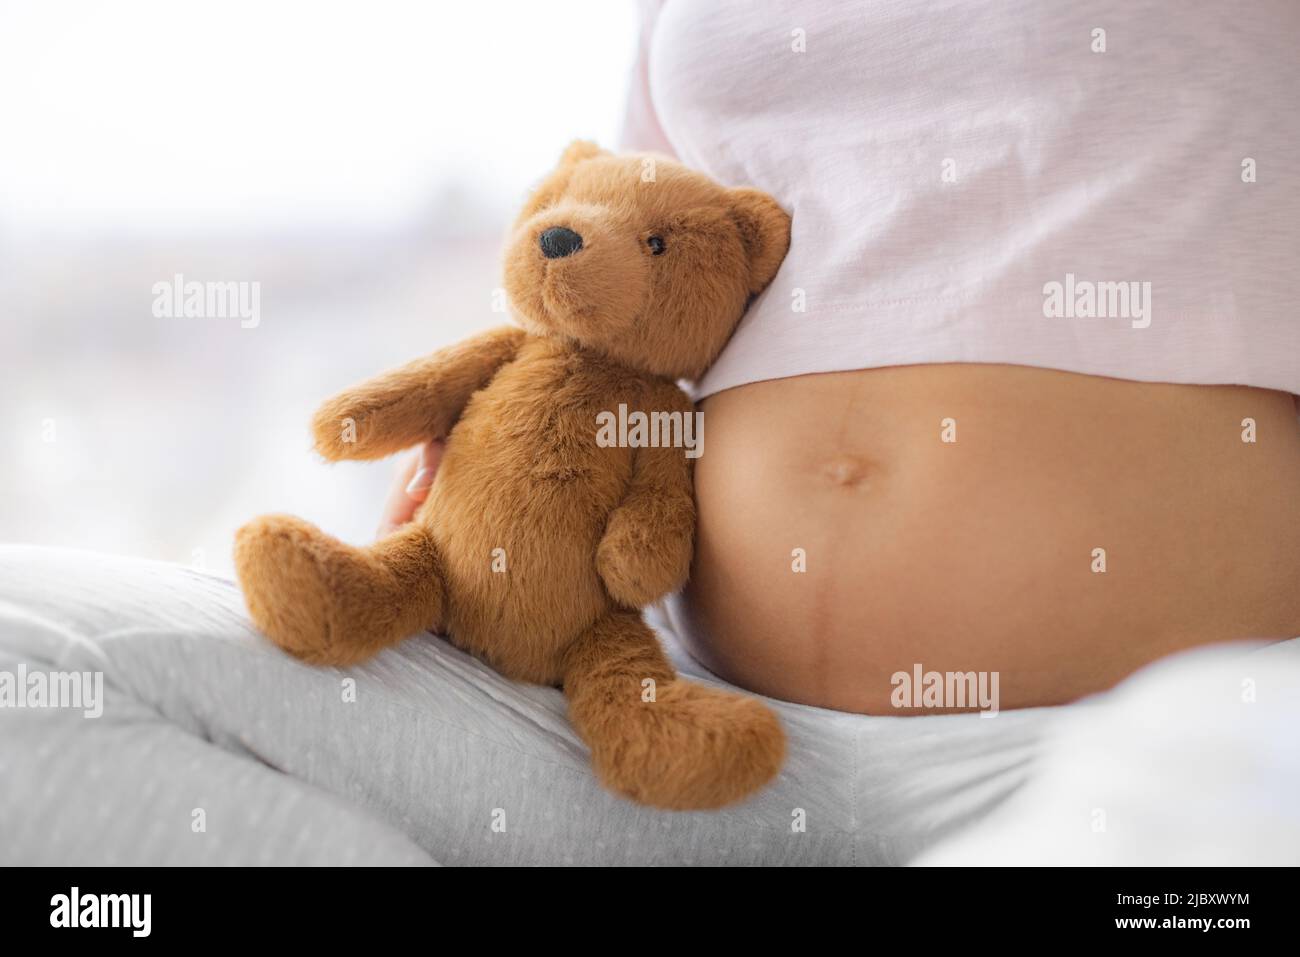 Mujer embarazada vientre cierre con bebé juguete osito de peluche peluche. Cuidado de la piel, estrías, problemas comunes de la piel durante el embarazo. Chica sana Foto de stock